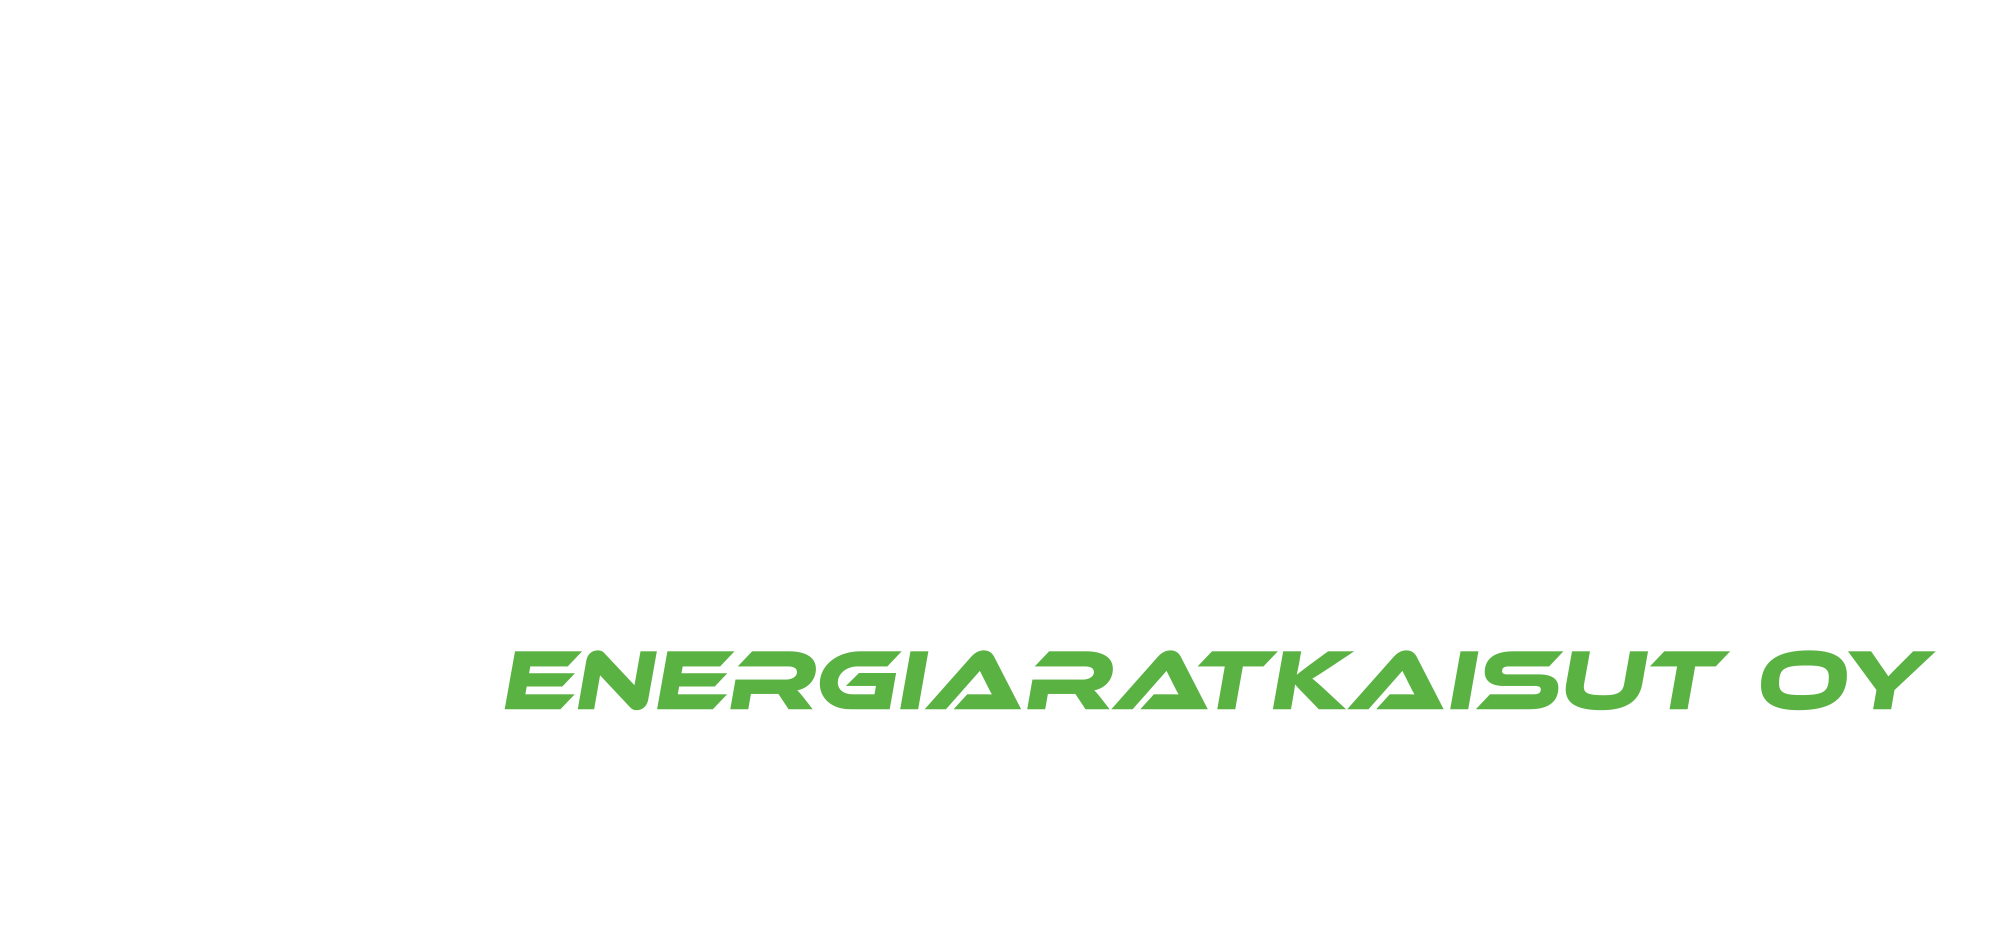 Suomen Energiaratkaisut Oy